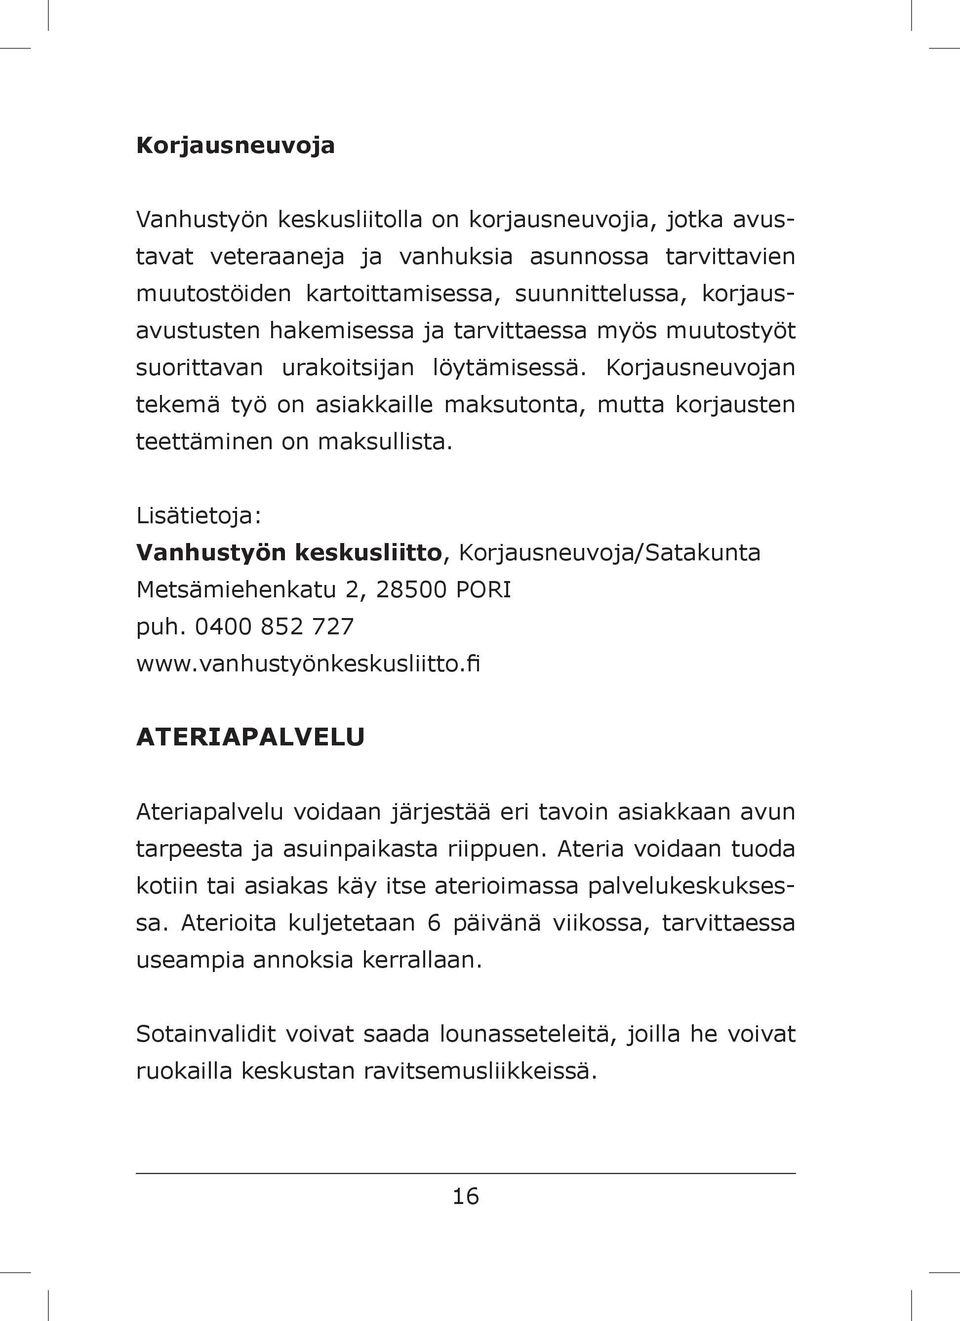 Vanhustyön keskusliitto, Korjausneuvoja/Satakunta Metsämiehenkatu 2, 28500 PORI puh. 0400 852 727 www.vanhustyönkeskusliitto.